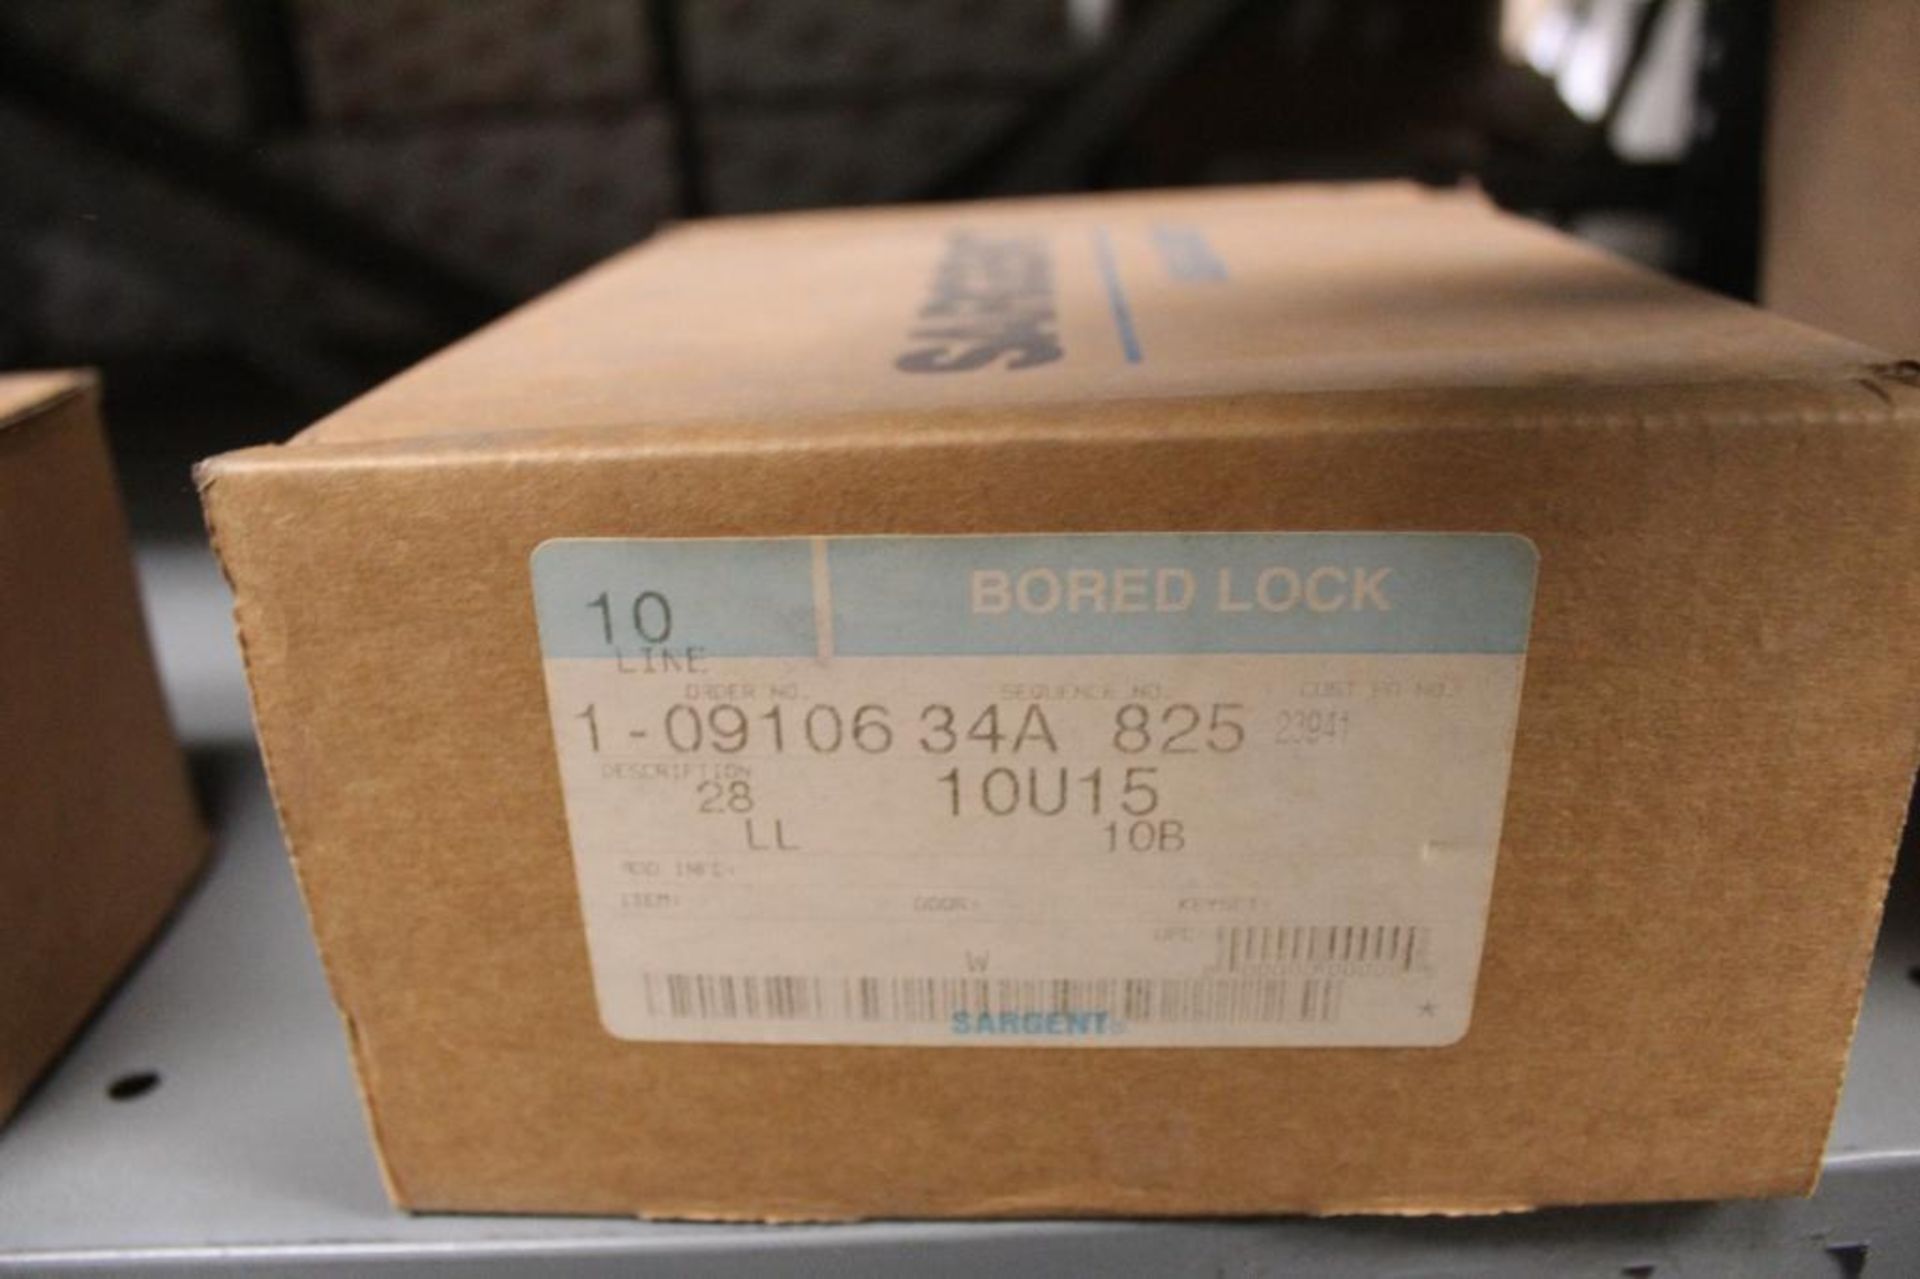 Lot of (32) Sargent Bored Lock Door Handles Models:28-10G37-KL-10B(x22) and 28-10U15-LL-10B(x10) - Image 14 of 16